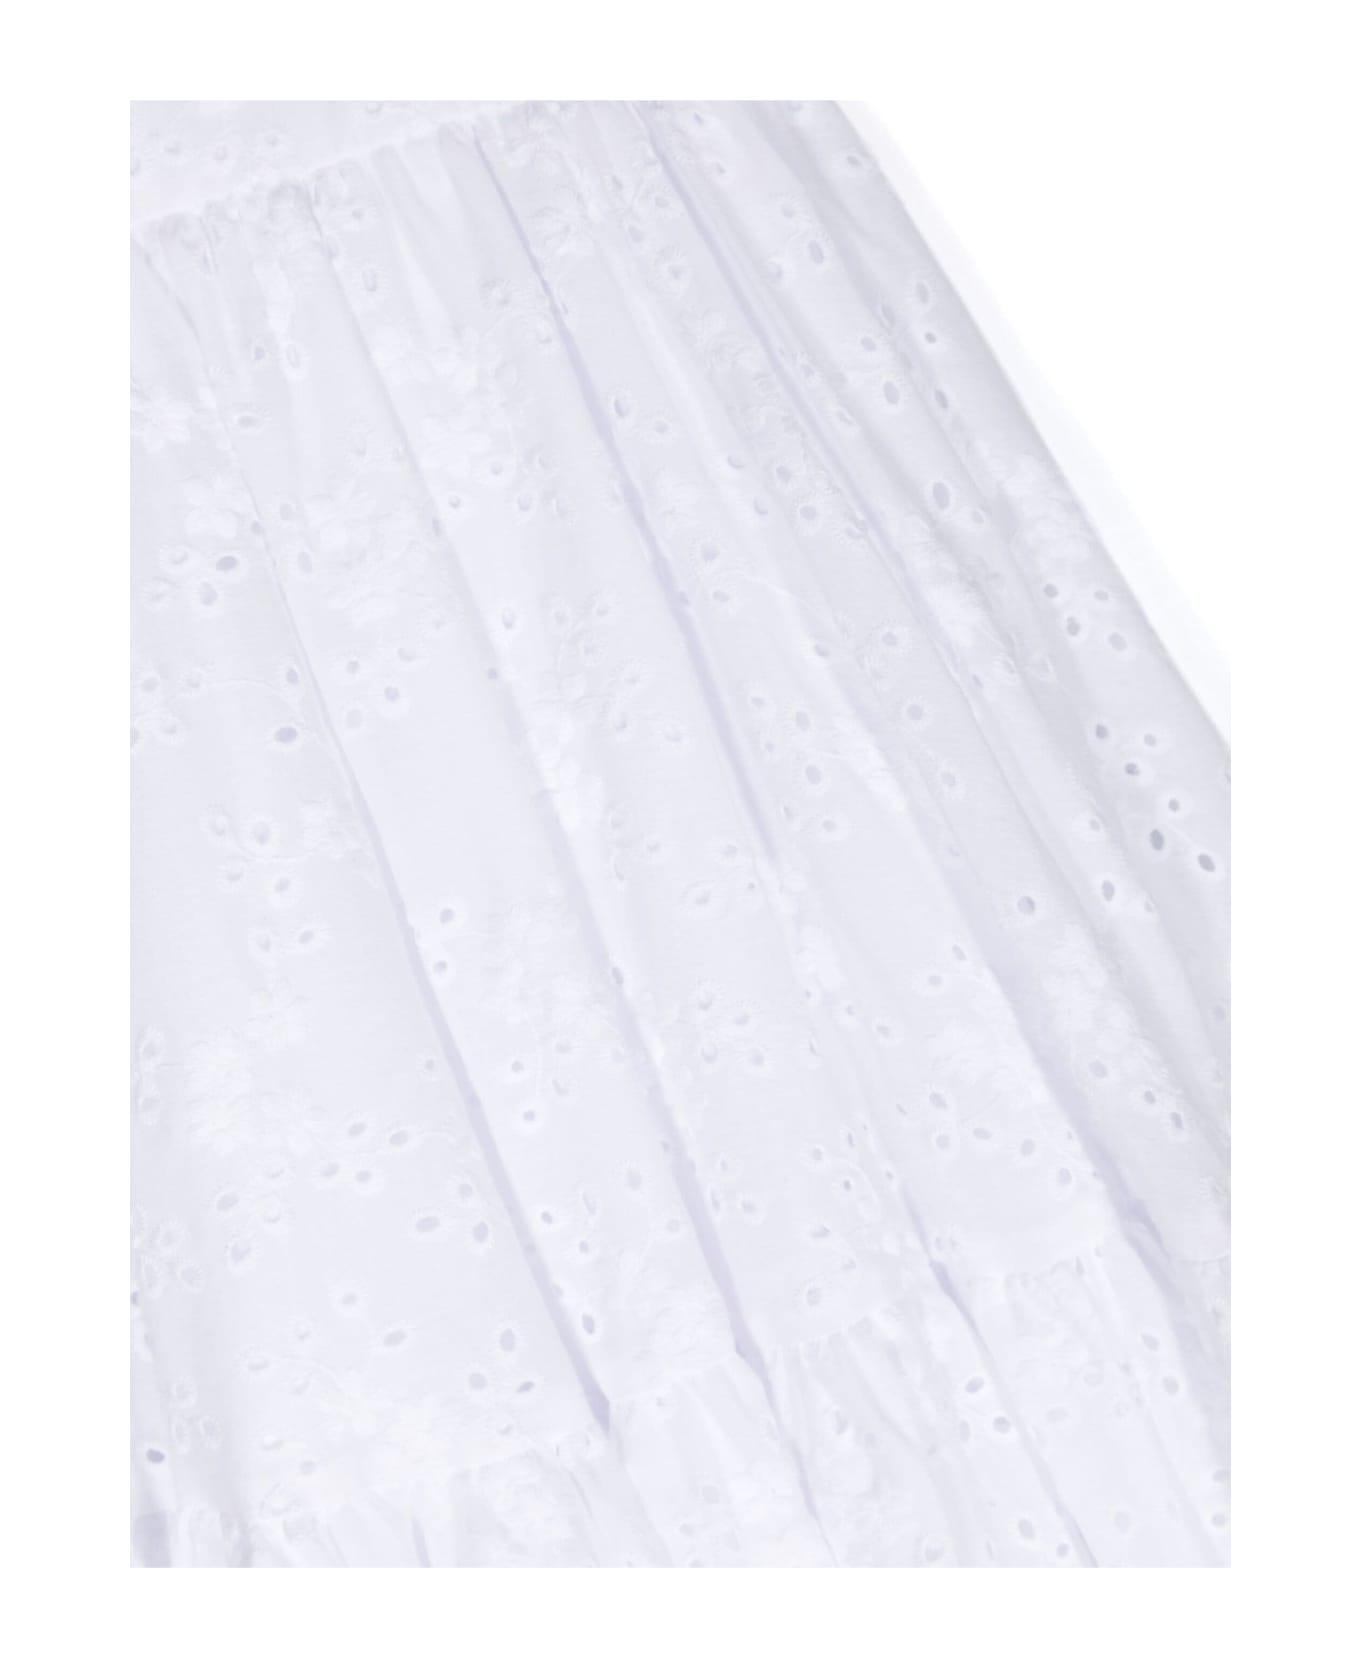 Monnalisa Dresses White - White ワンピース＆ドレス